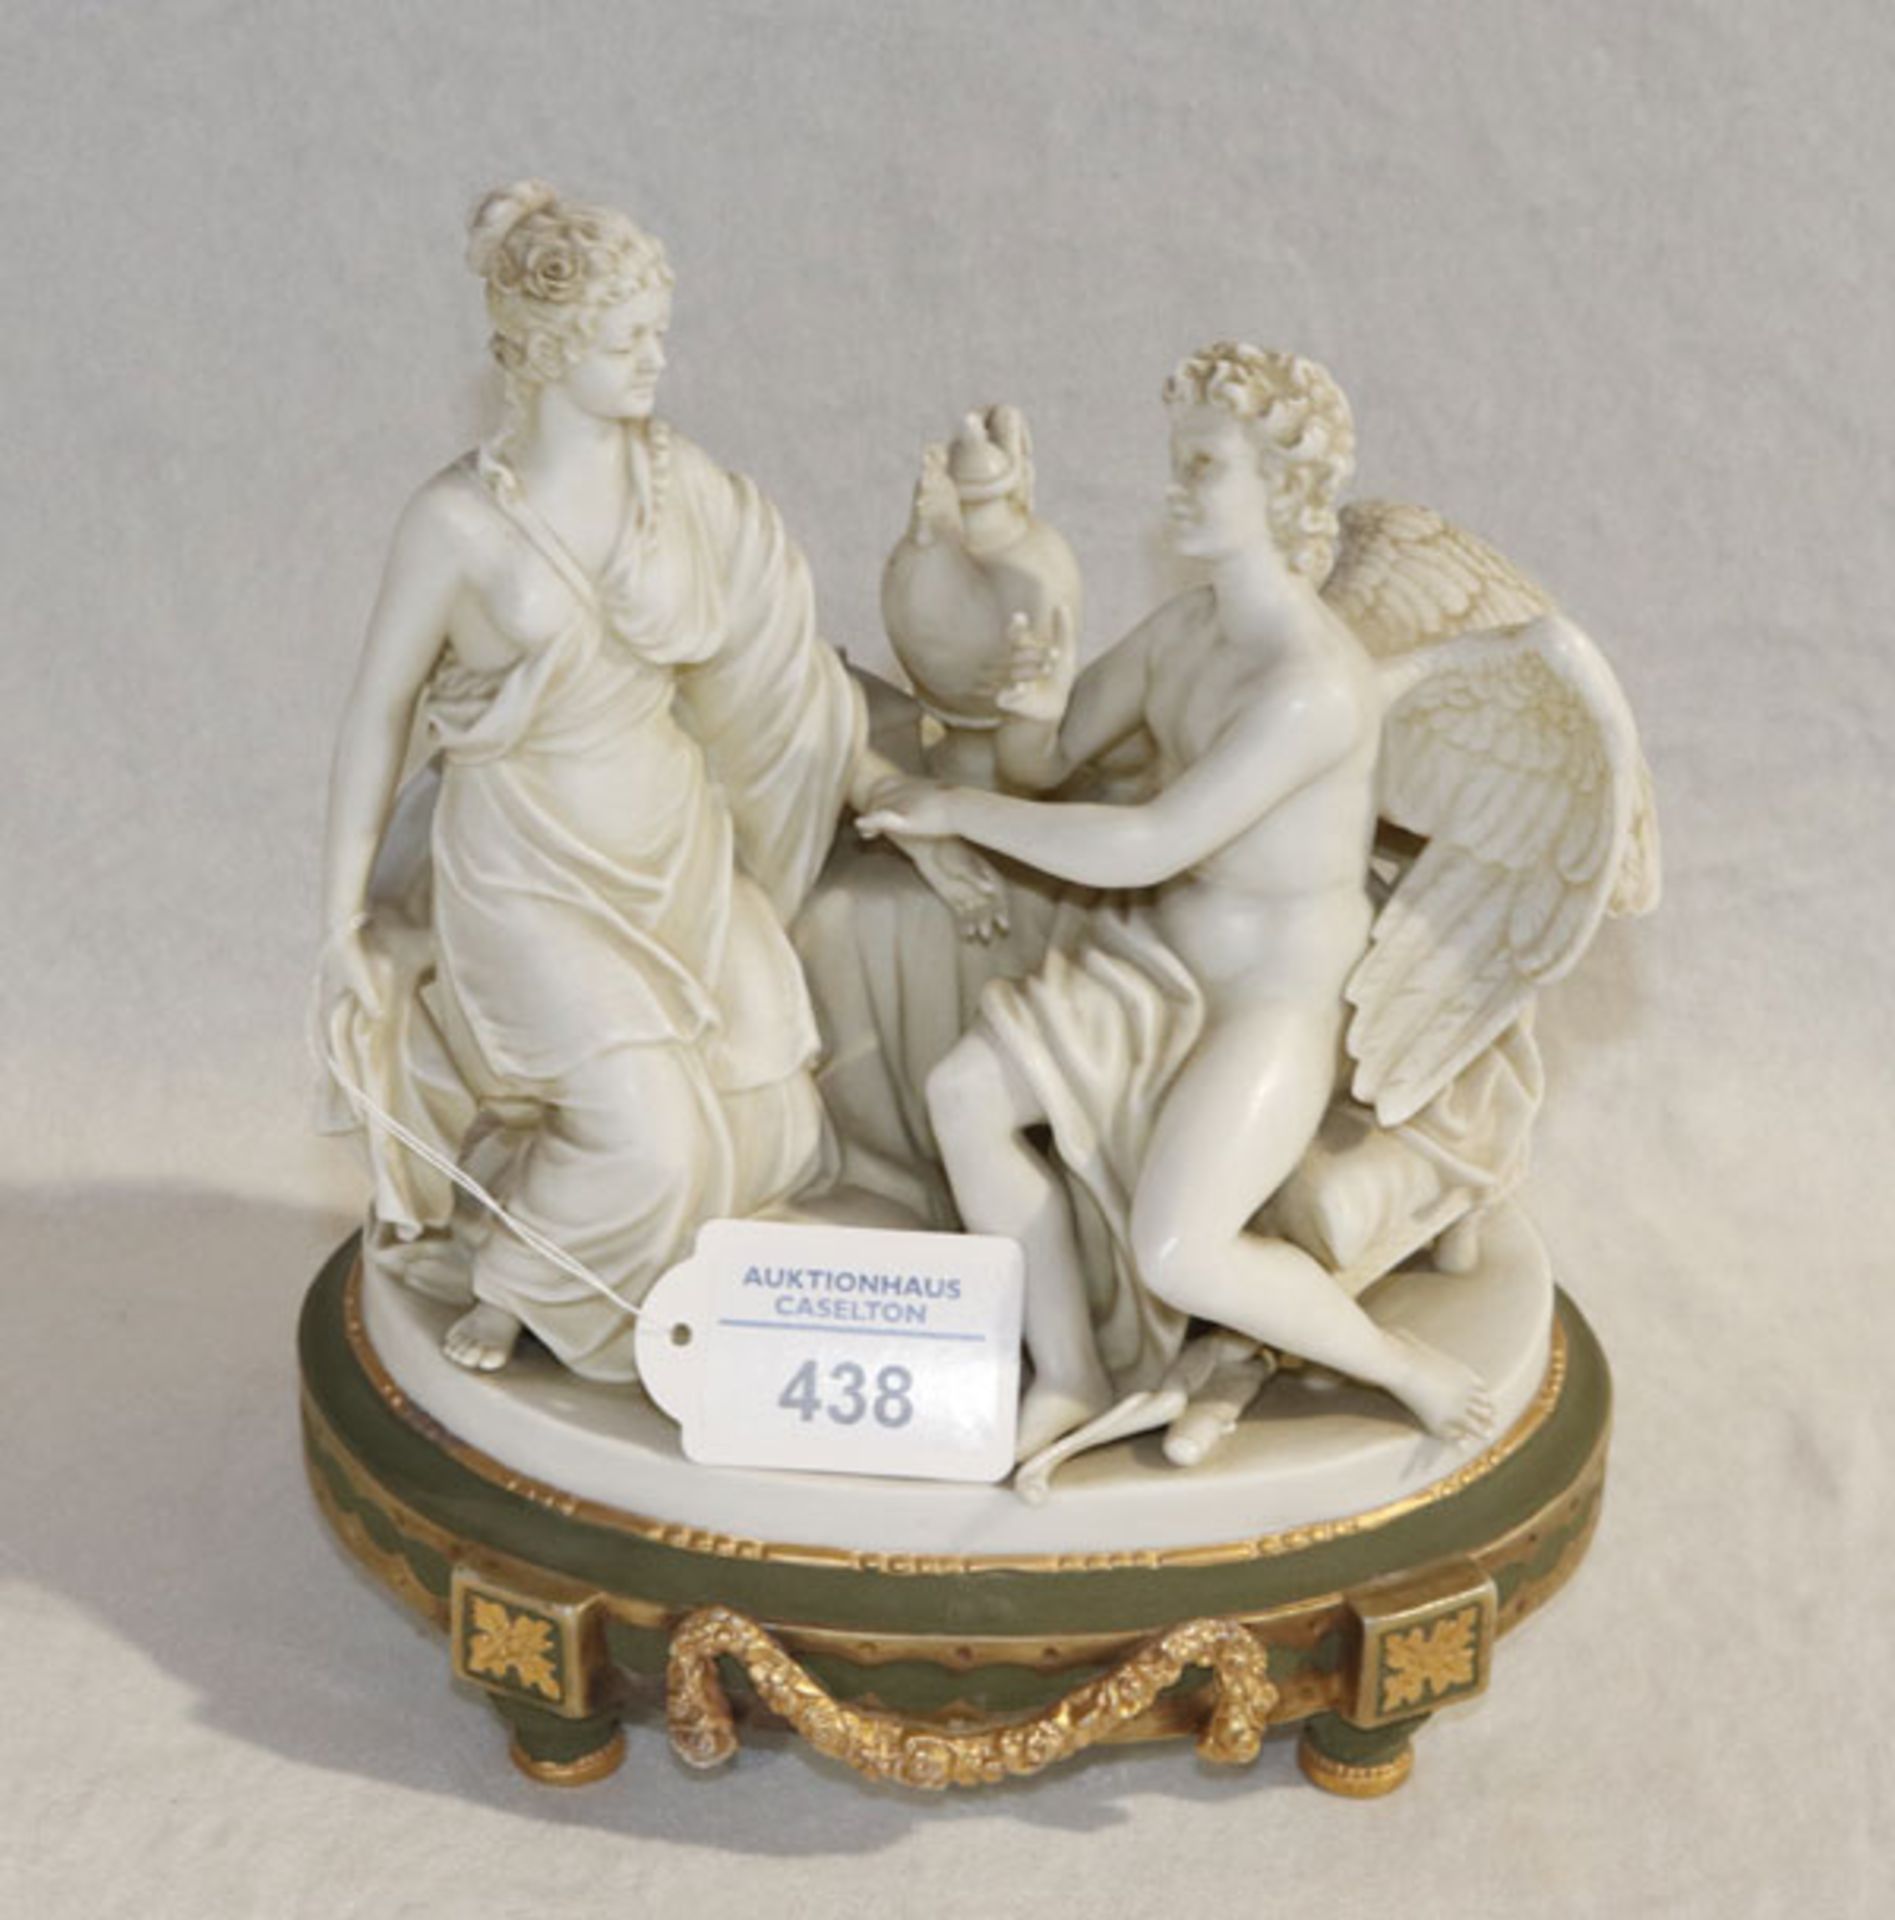 Porzellan Figurengruppe 'Dame mit Schutzengel', Sockel grün/gold bemalt, gut erhalten, H 21 cm, B 18